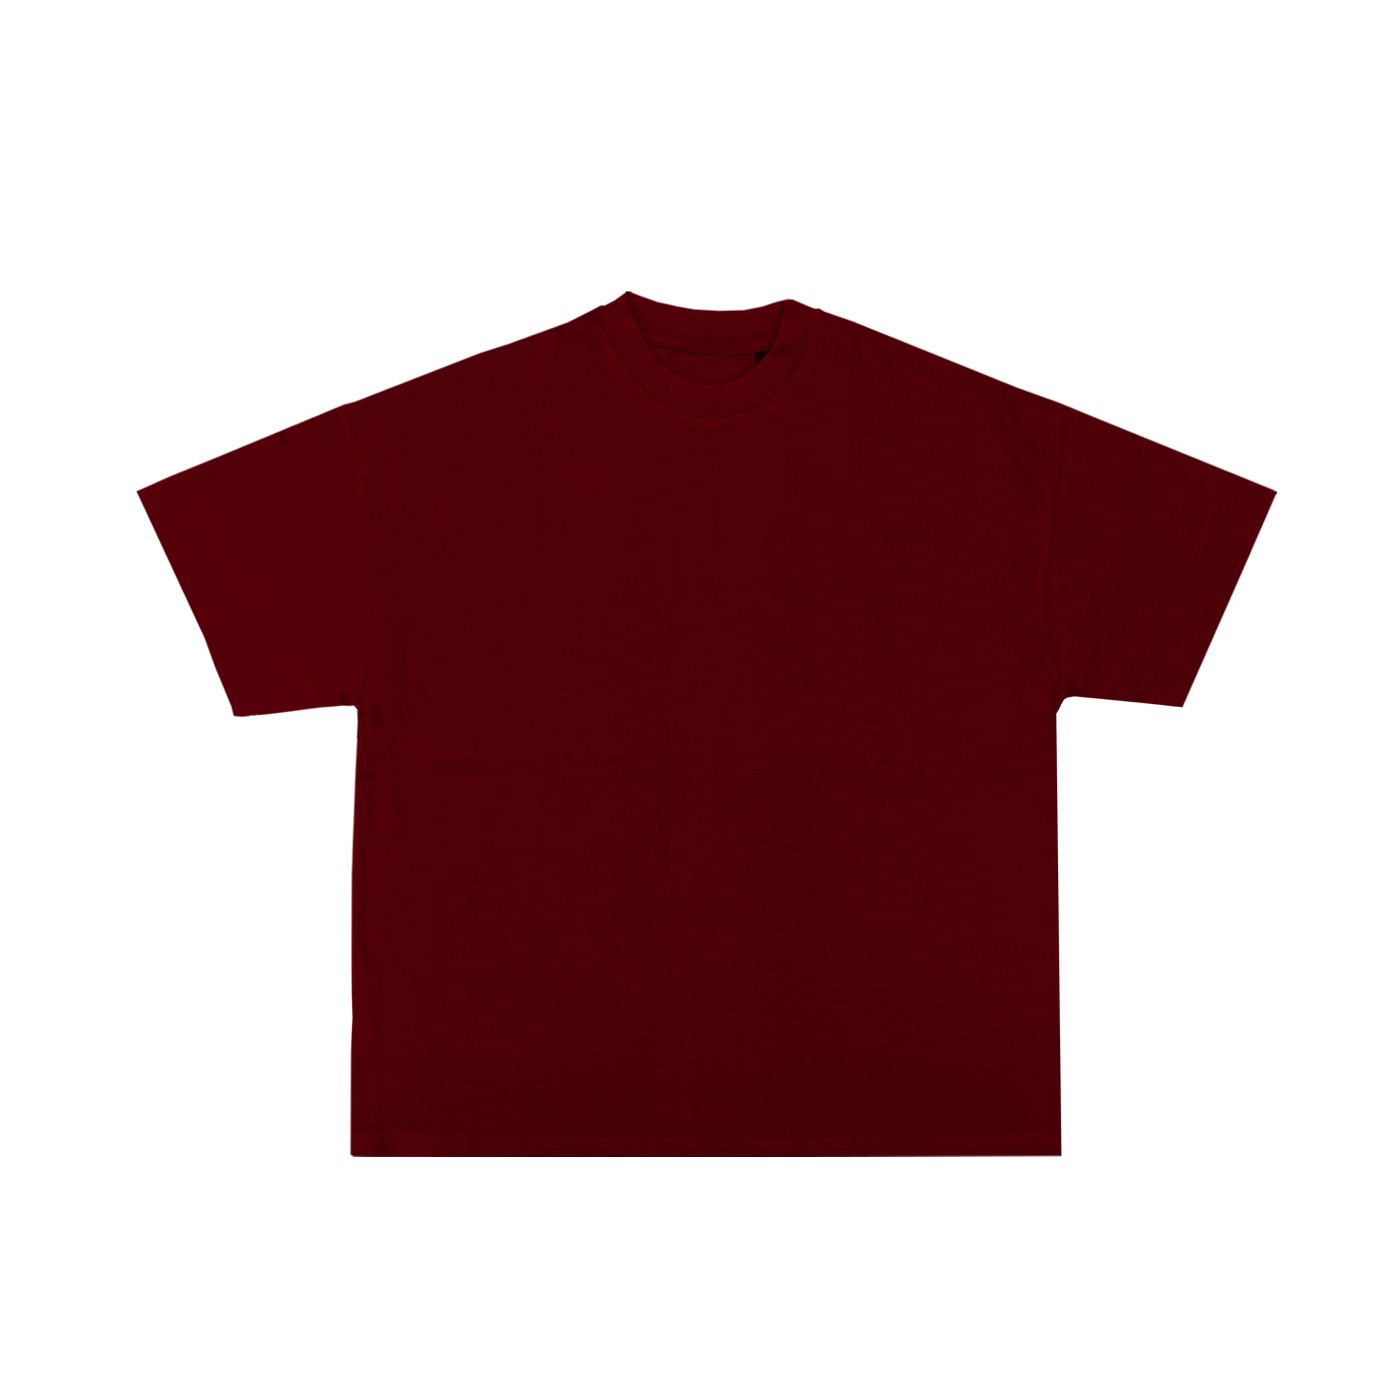 "T-shirt bordeaux en coton de haute qualité, disponible pour personnalisation sur prynt.shop."